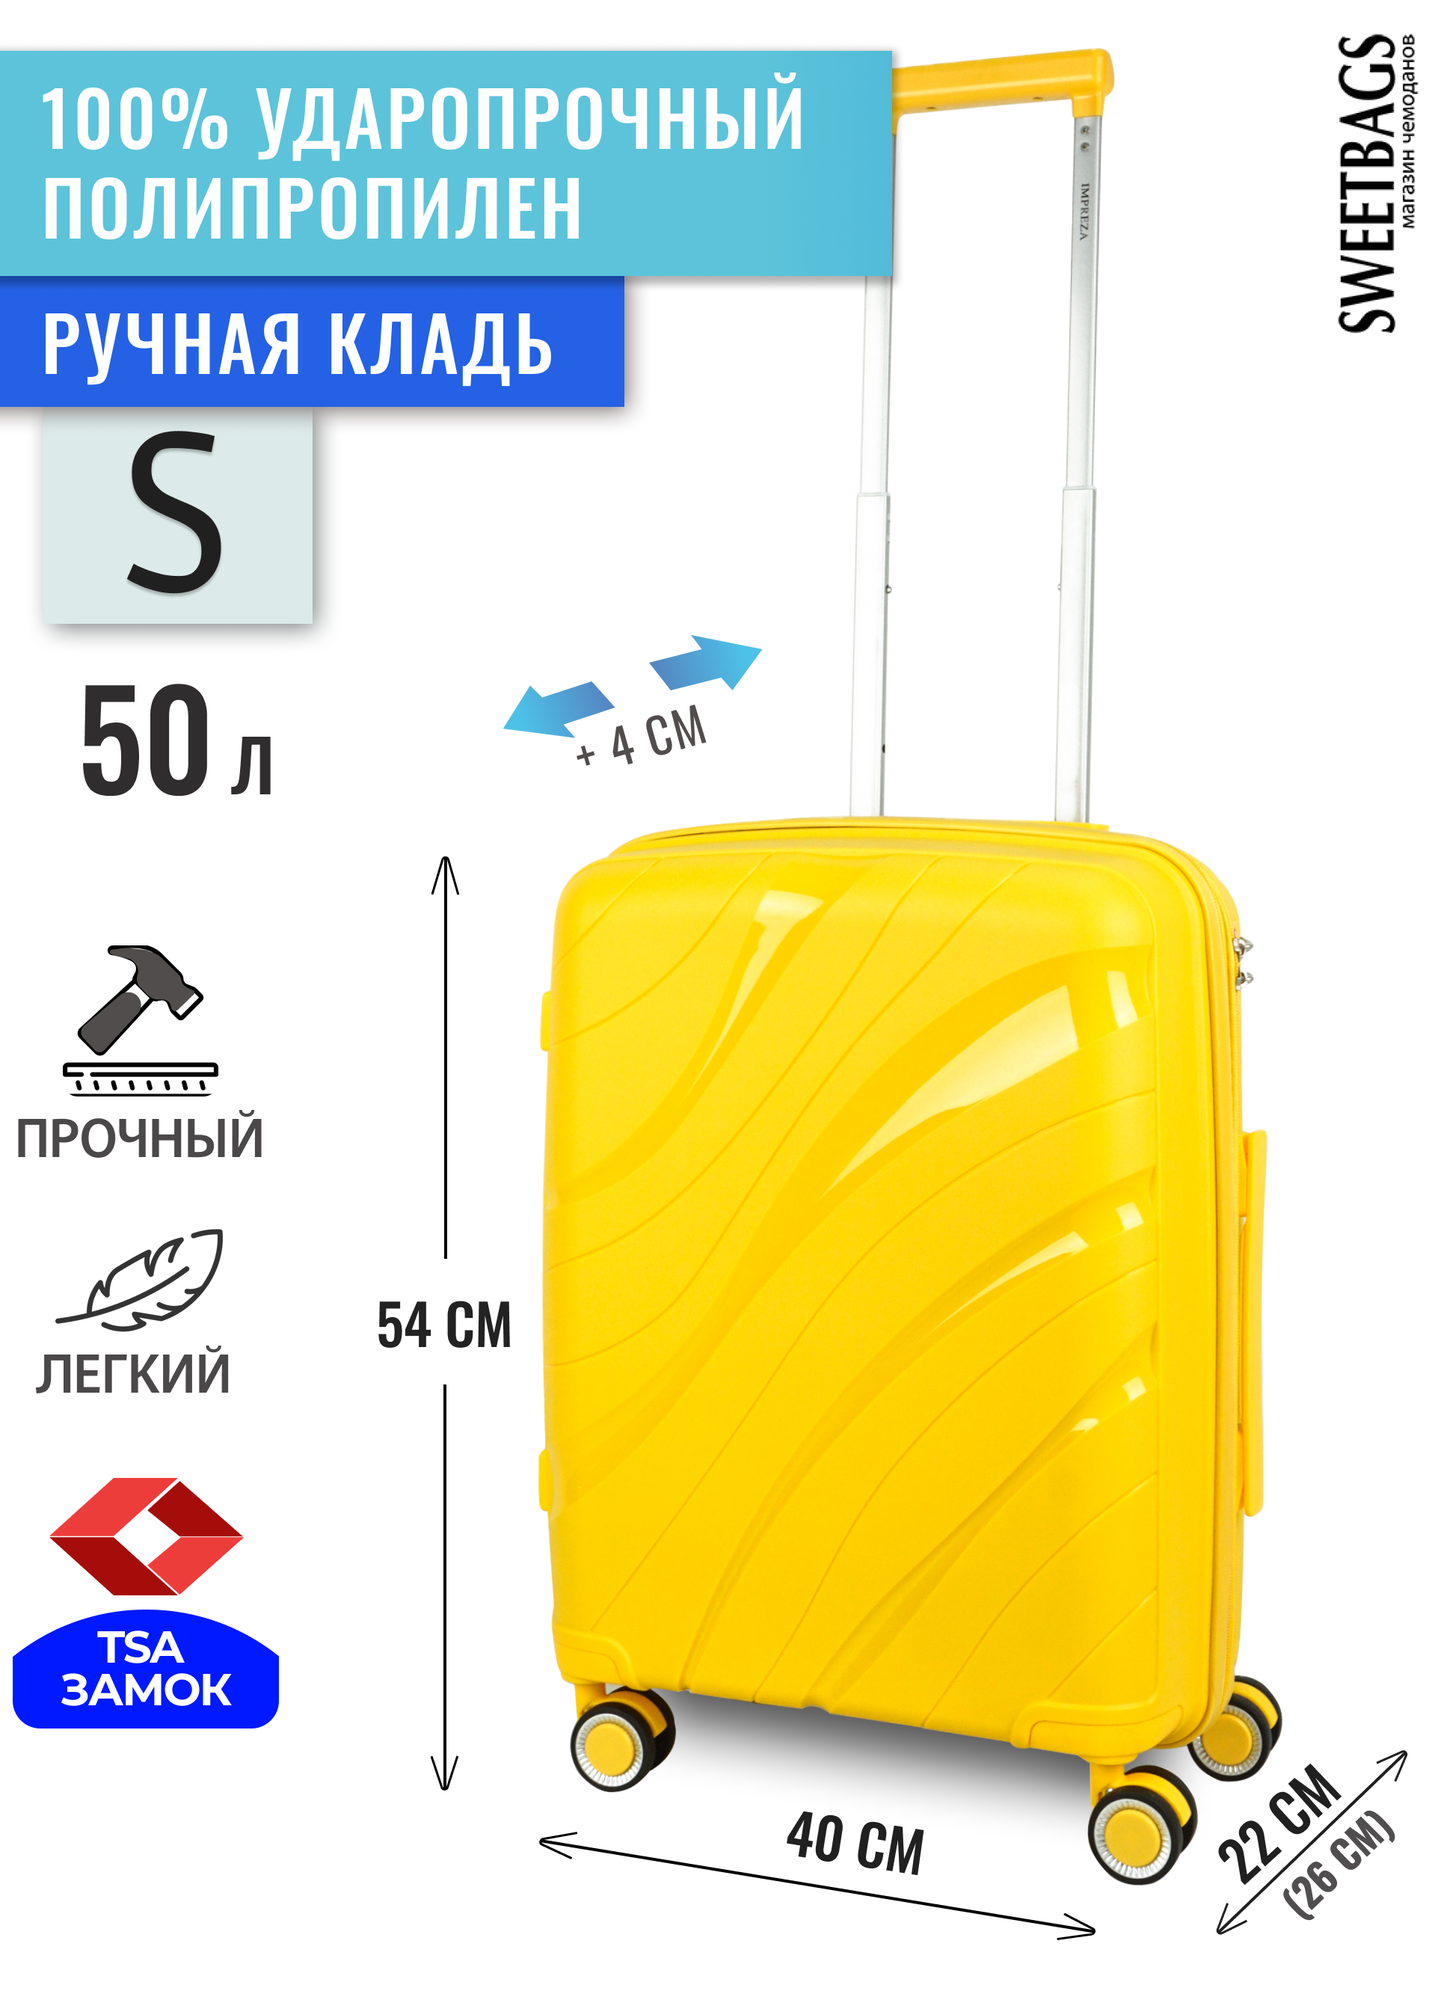 Чемодан Sweetbags маленький (ручная кладь) из полипропилена с расширением на 4-х колесах с TSA замком (волны) желтый S